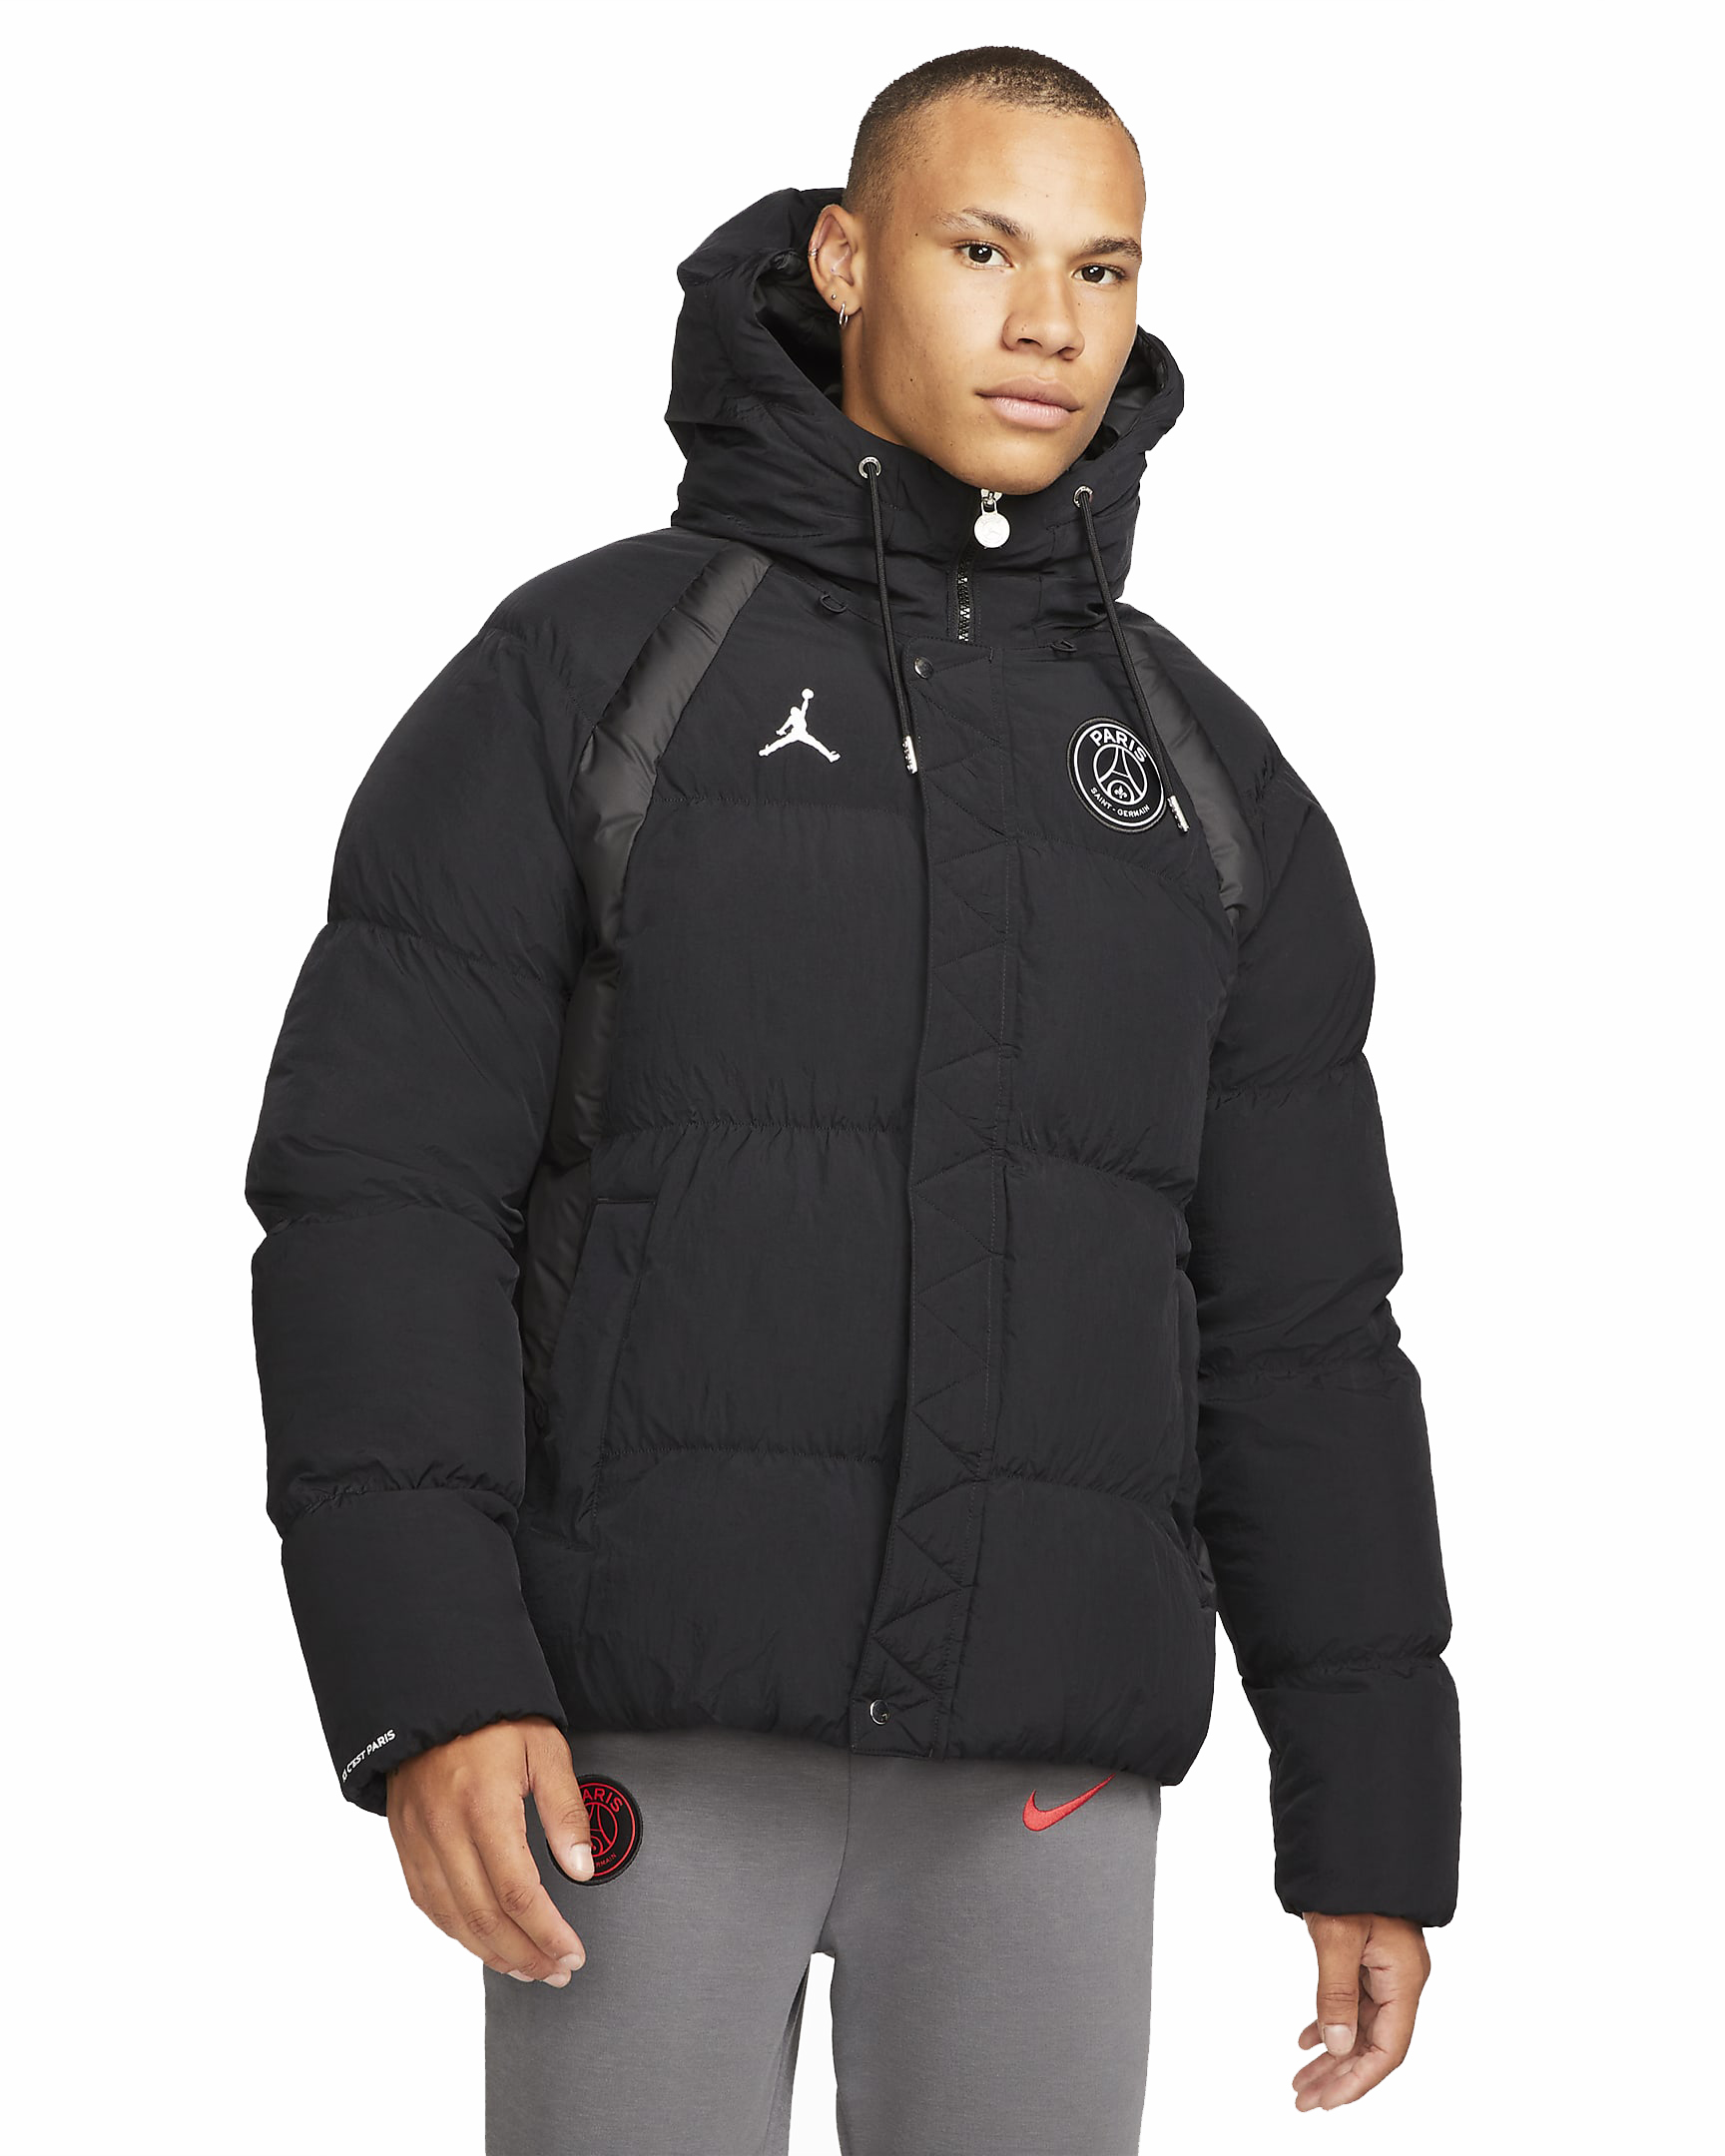 ÐÑÐ¿Ð¸ÑÑ Nike Jordan Paris Saint-Germain Puffer Jacket DB6494-010 ÑÐµÑÐ½ÑÐ¹ XL Ð² ÐºÑÐµÐ´Ð¸Ñ Ð² ÐÐ»Ð¼Ð°ÑÑ 